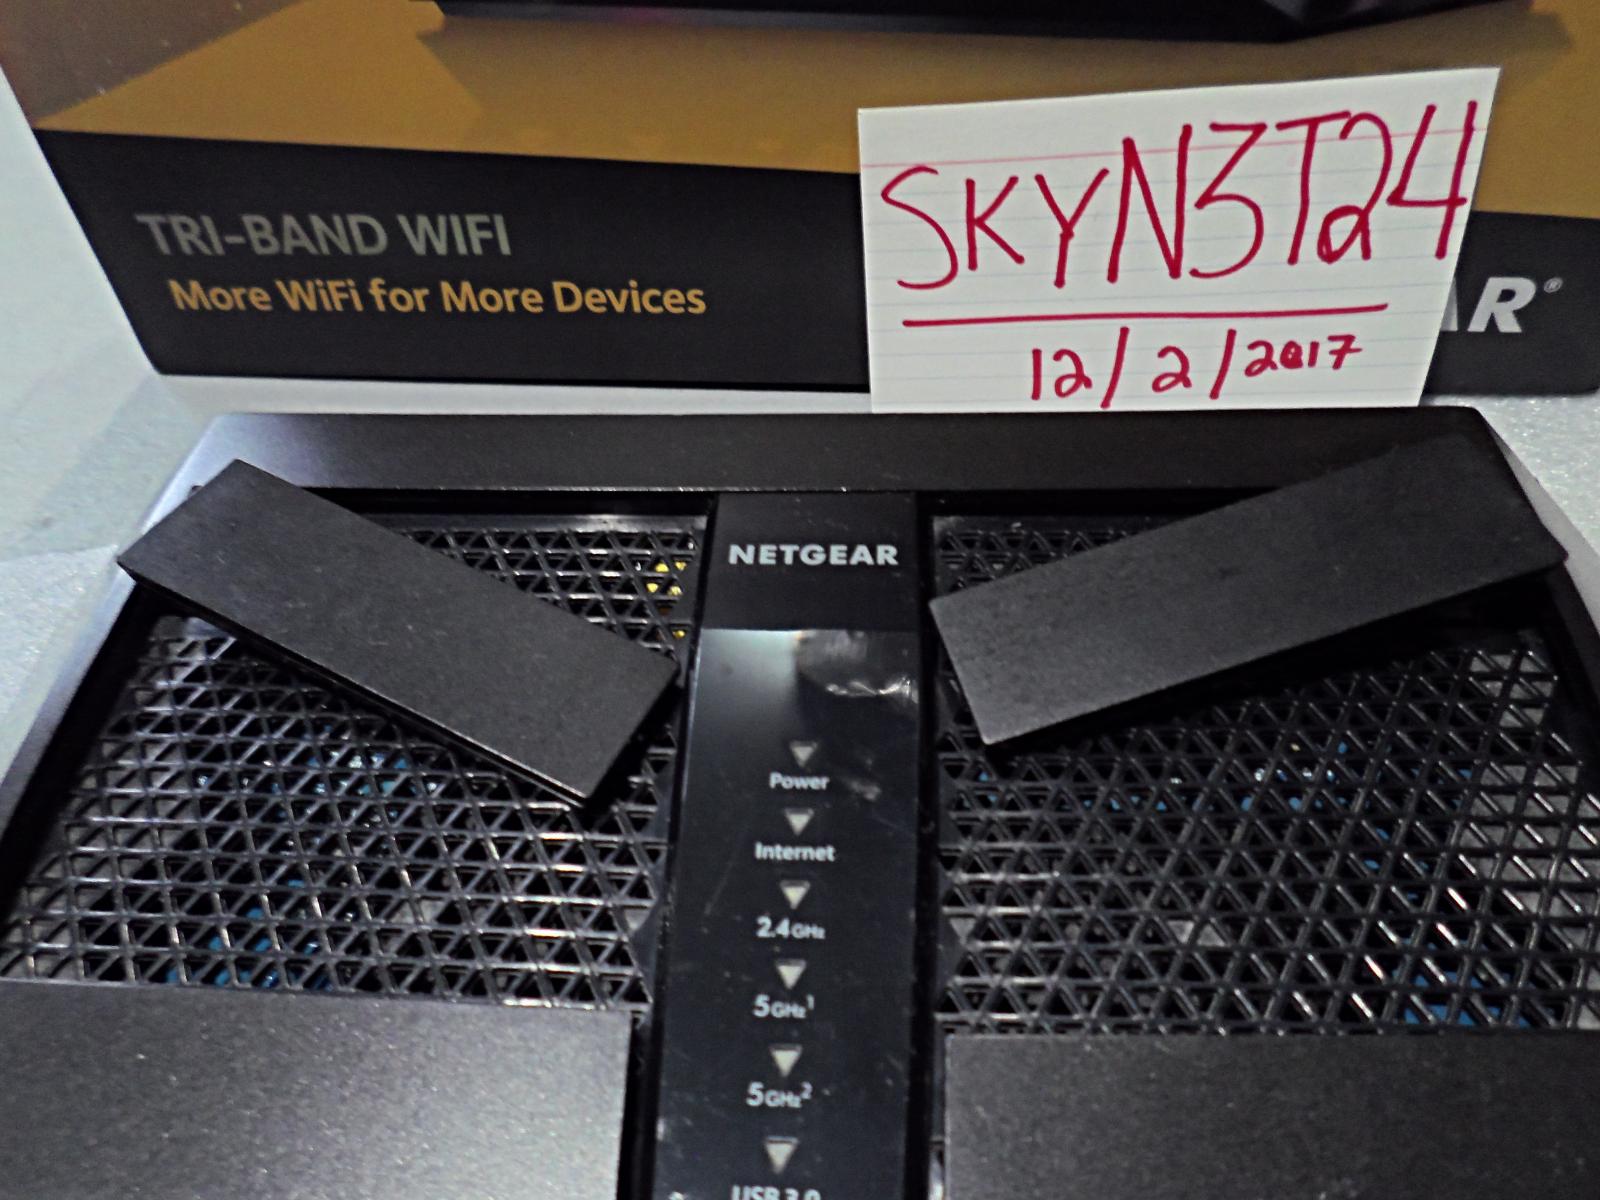 For sale Netgear NightHawk X6 AC3200 Tri-Band WiFI Router